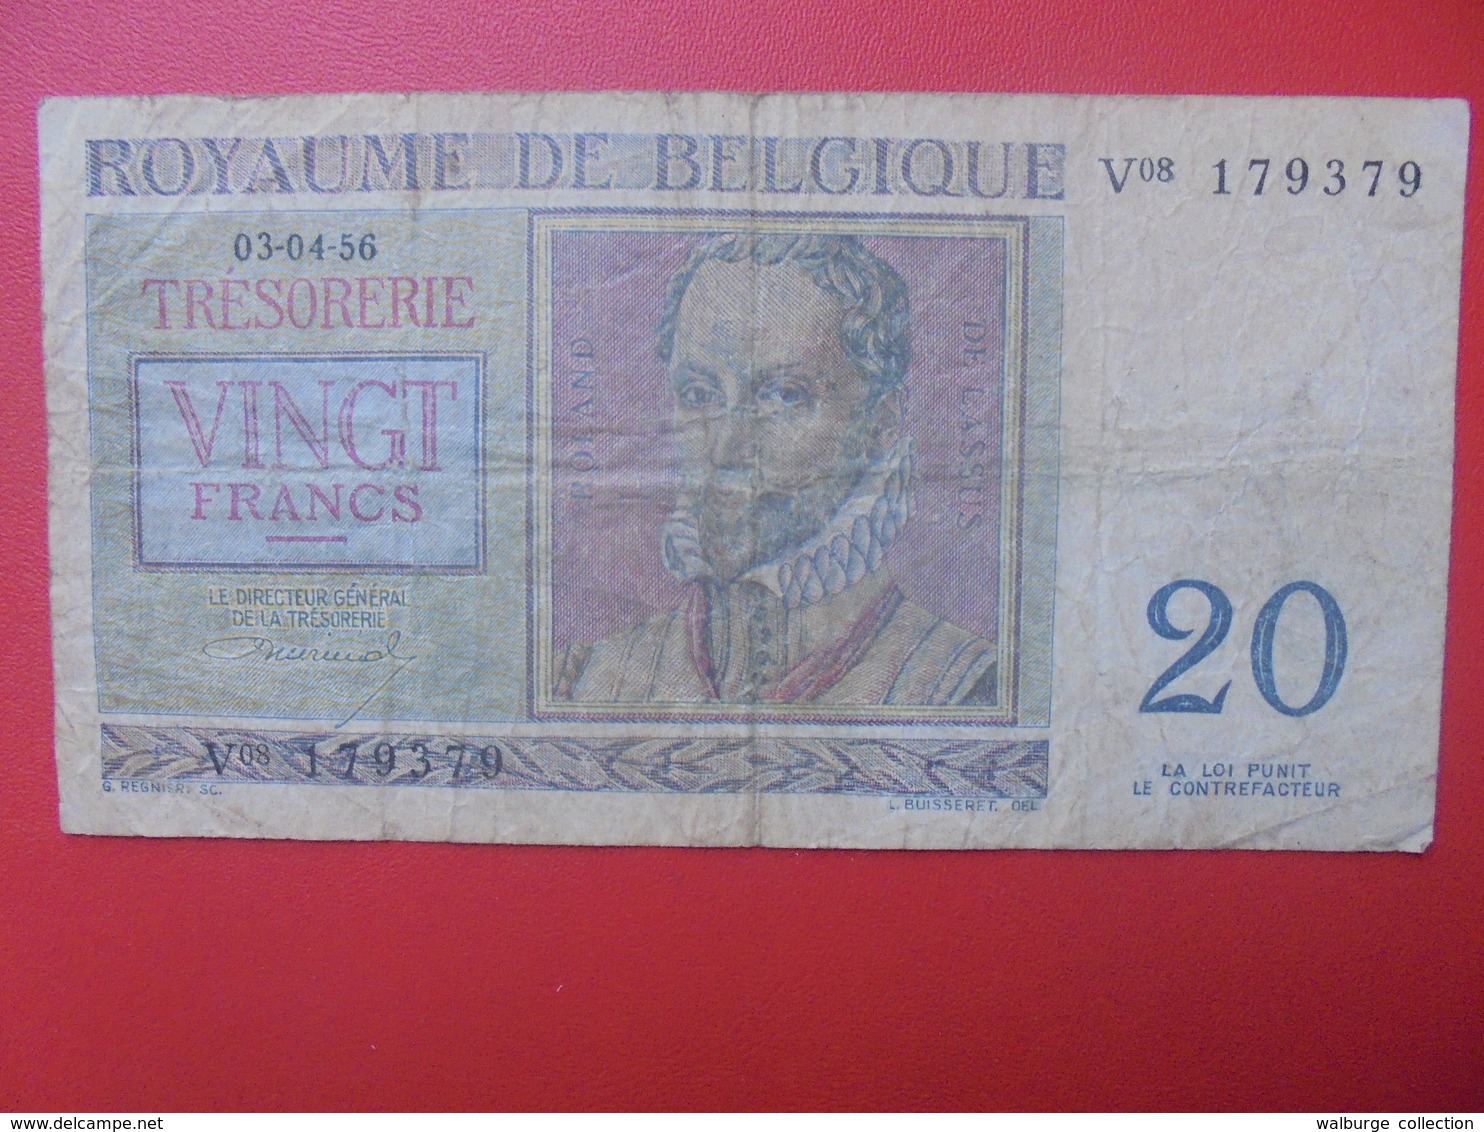 BELGIQUE 20 FRANCS 1956 CIRCULER (B.6) - 20 Franchi